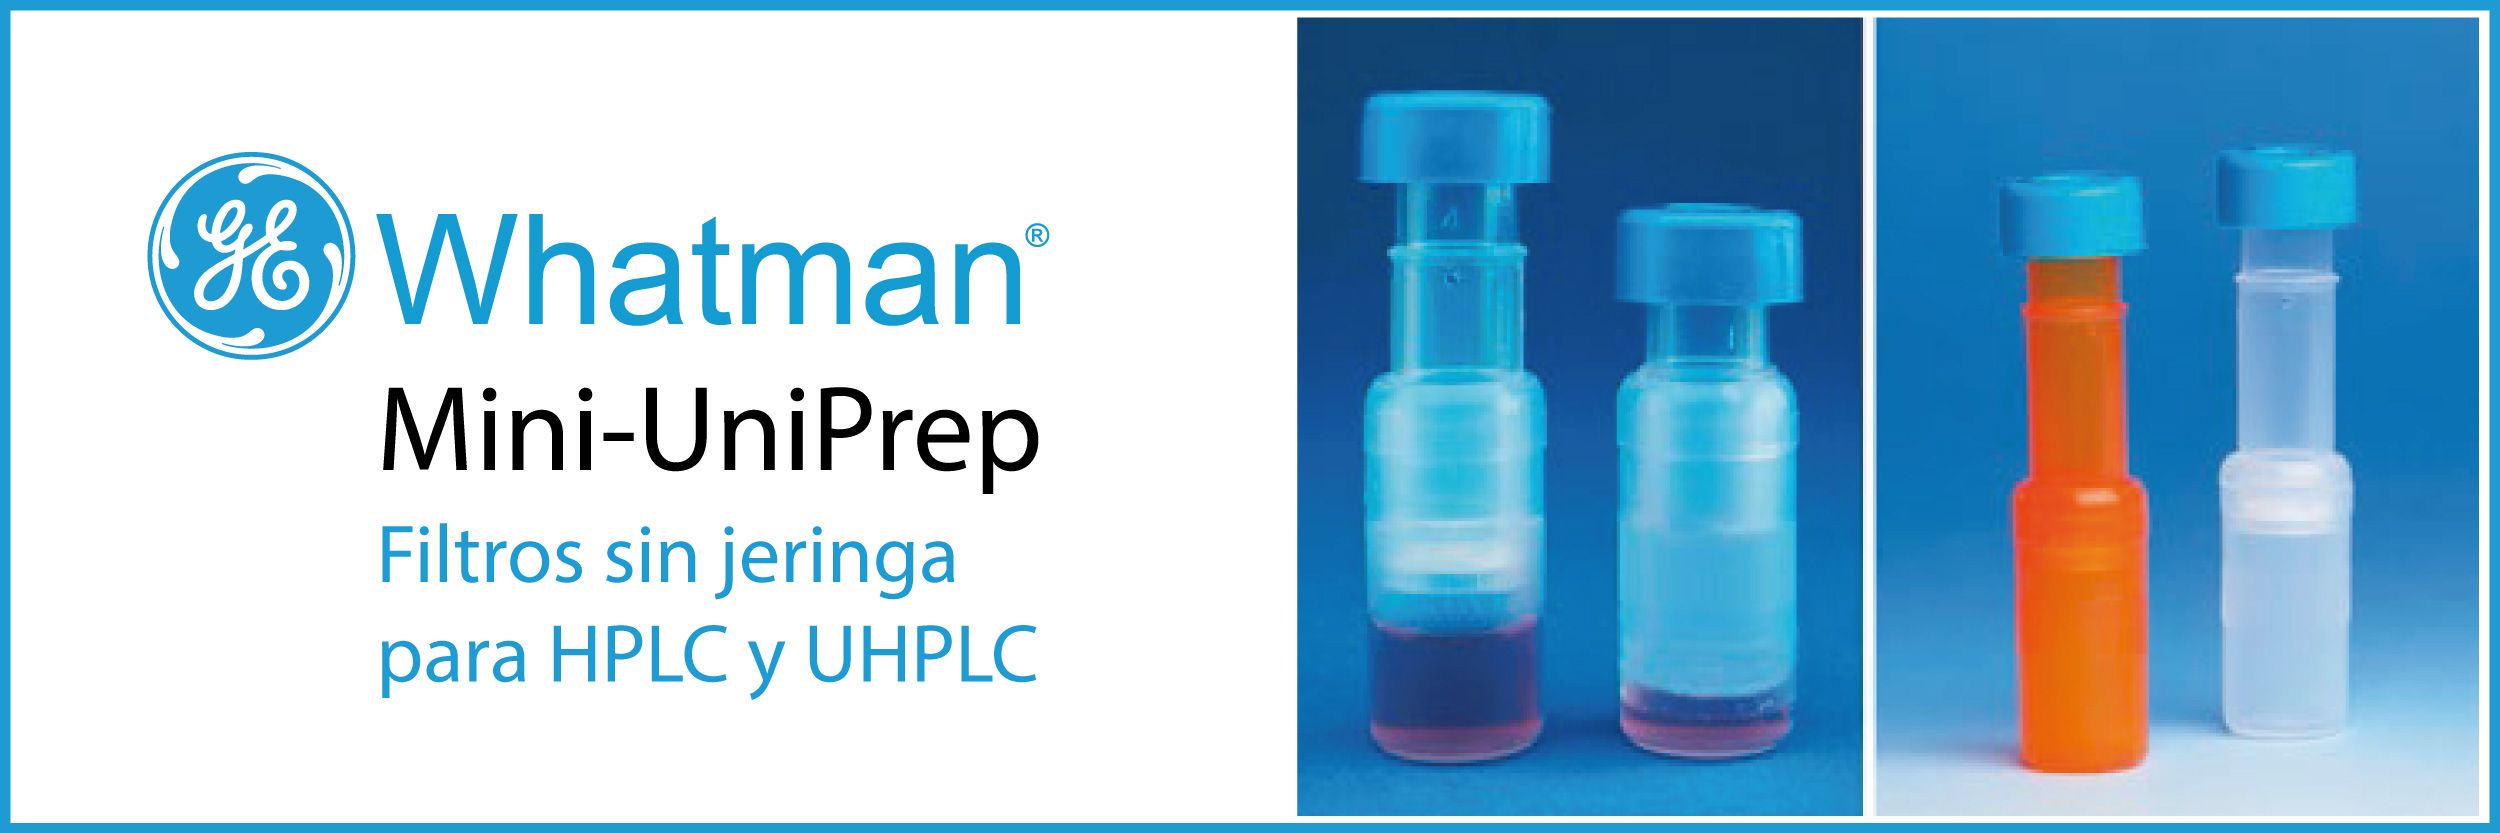 Prepare muestras para HPLC tres veces más rápido